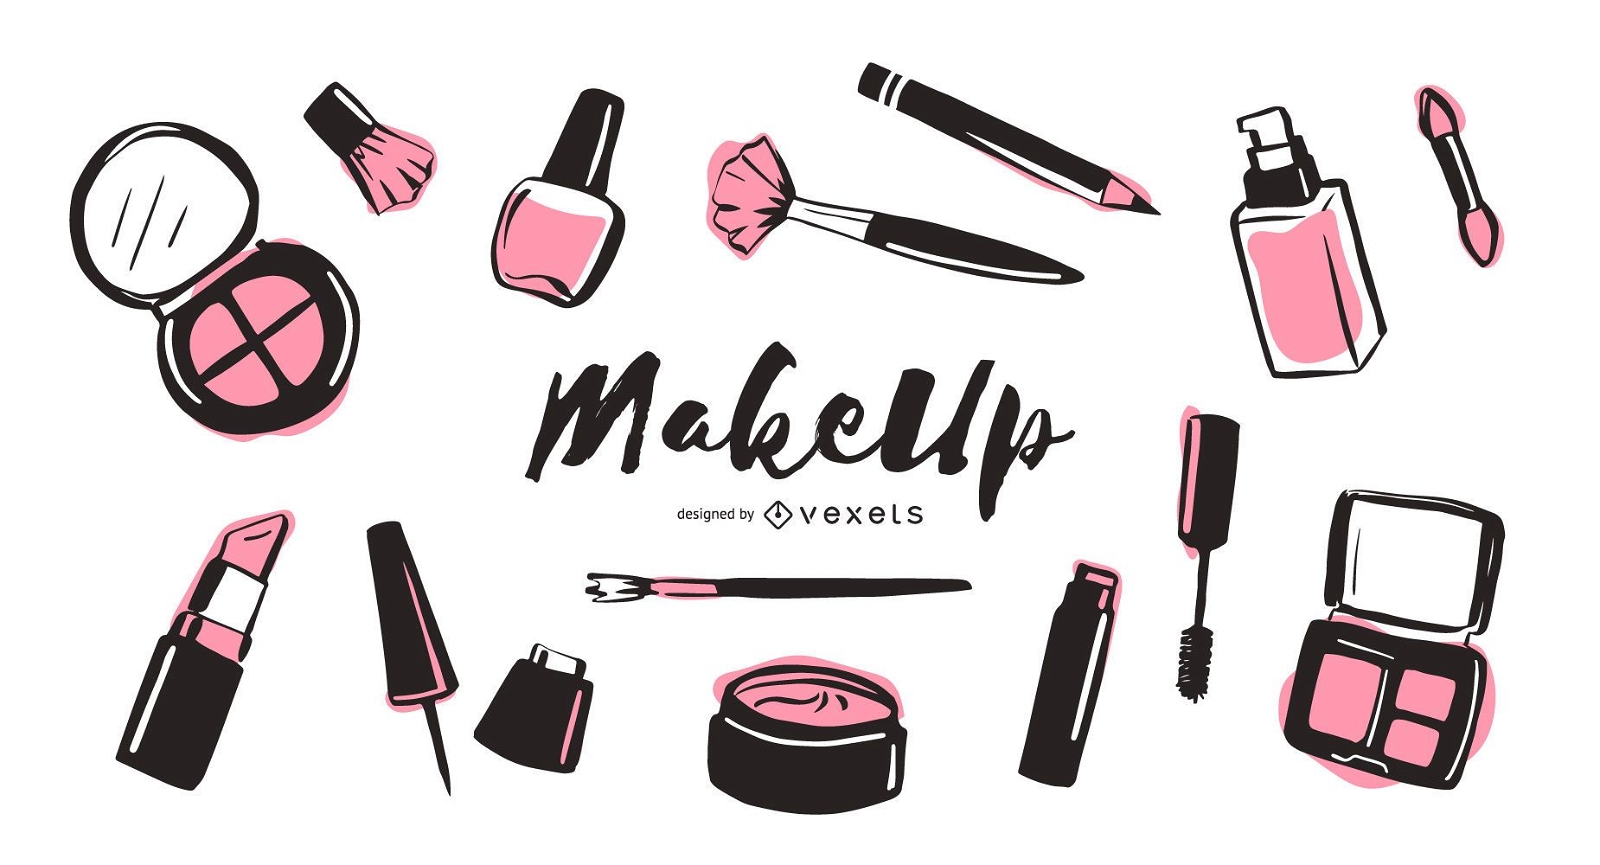 Illustrationspaket für Make-up-Elemente